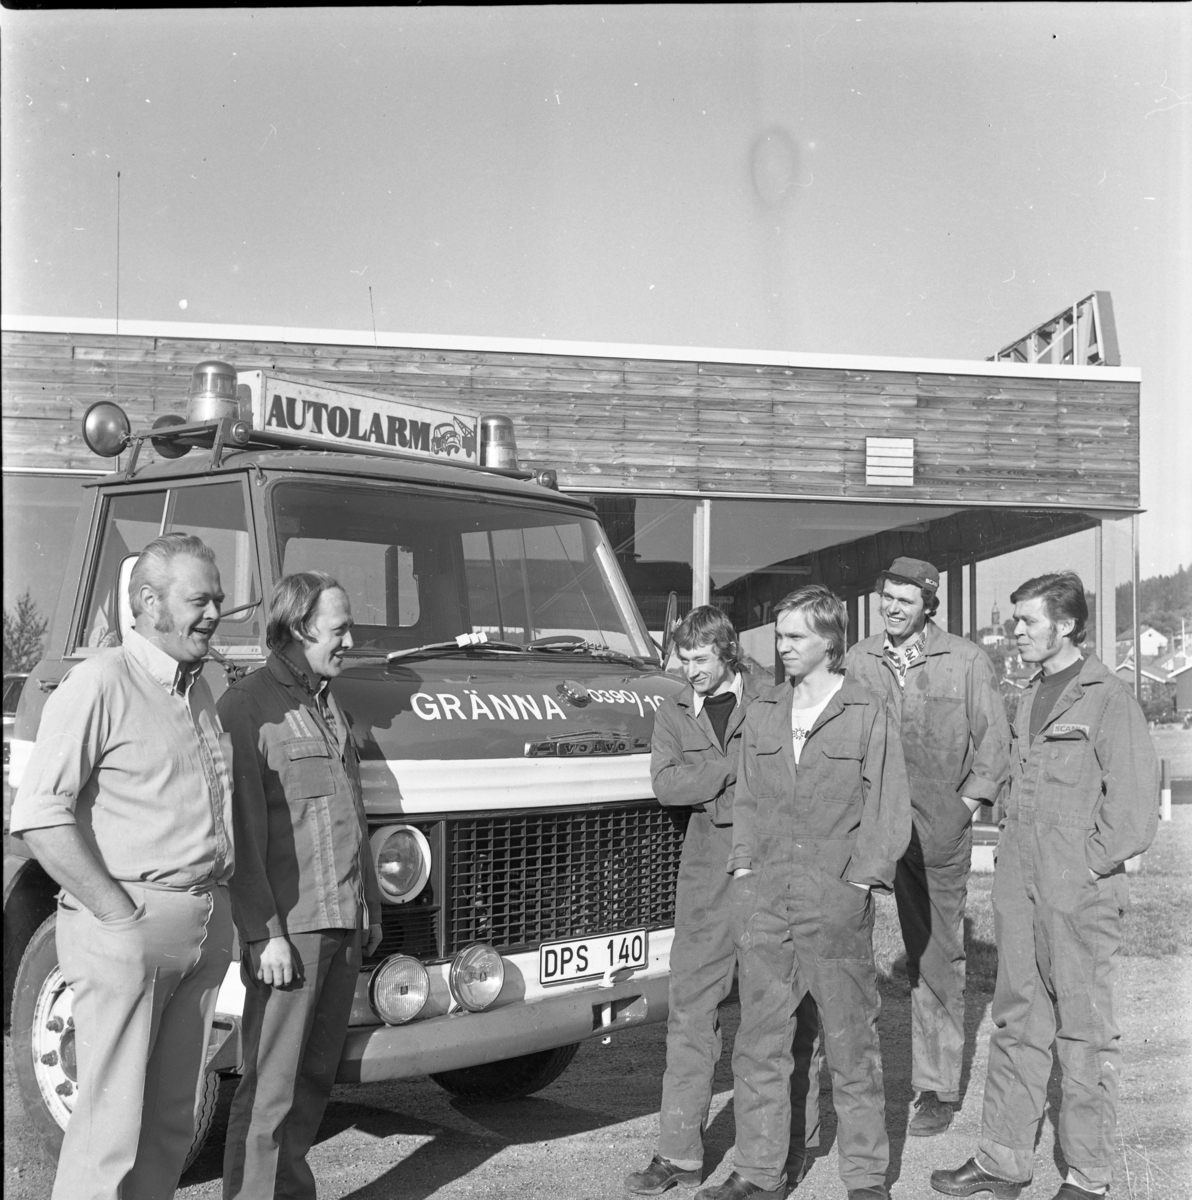 Sex män står vid fronten till en bärgningsbil med varningslampor och skylt "Autolarm" på taket. Två av männen, i civila kläder och något äldre, står till vänster. De andra fyra bär verkstadsoverall.